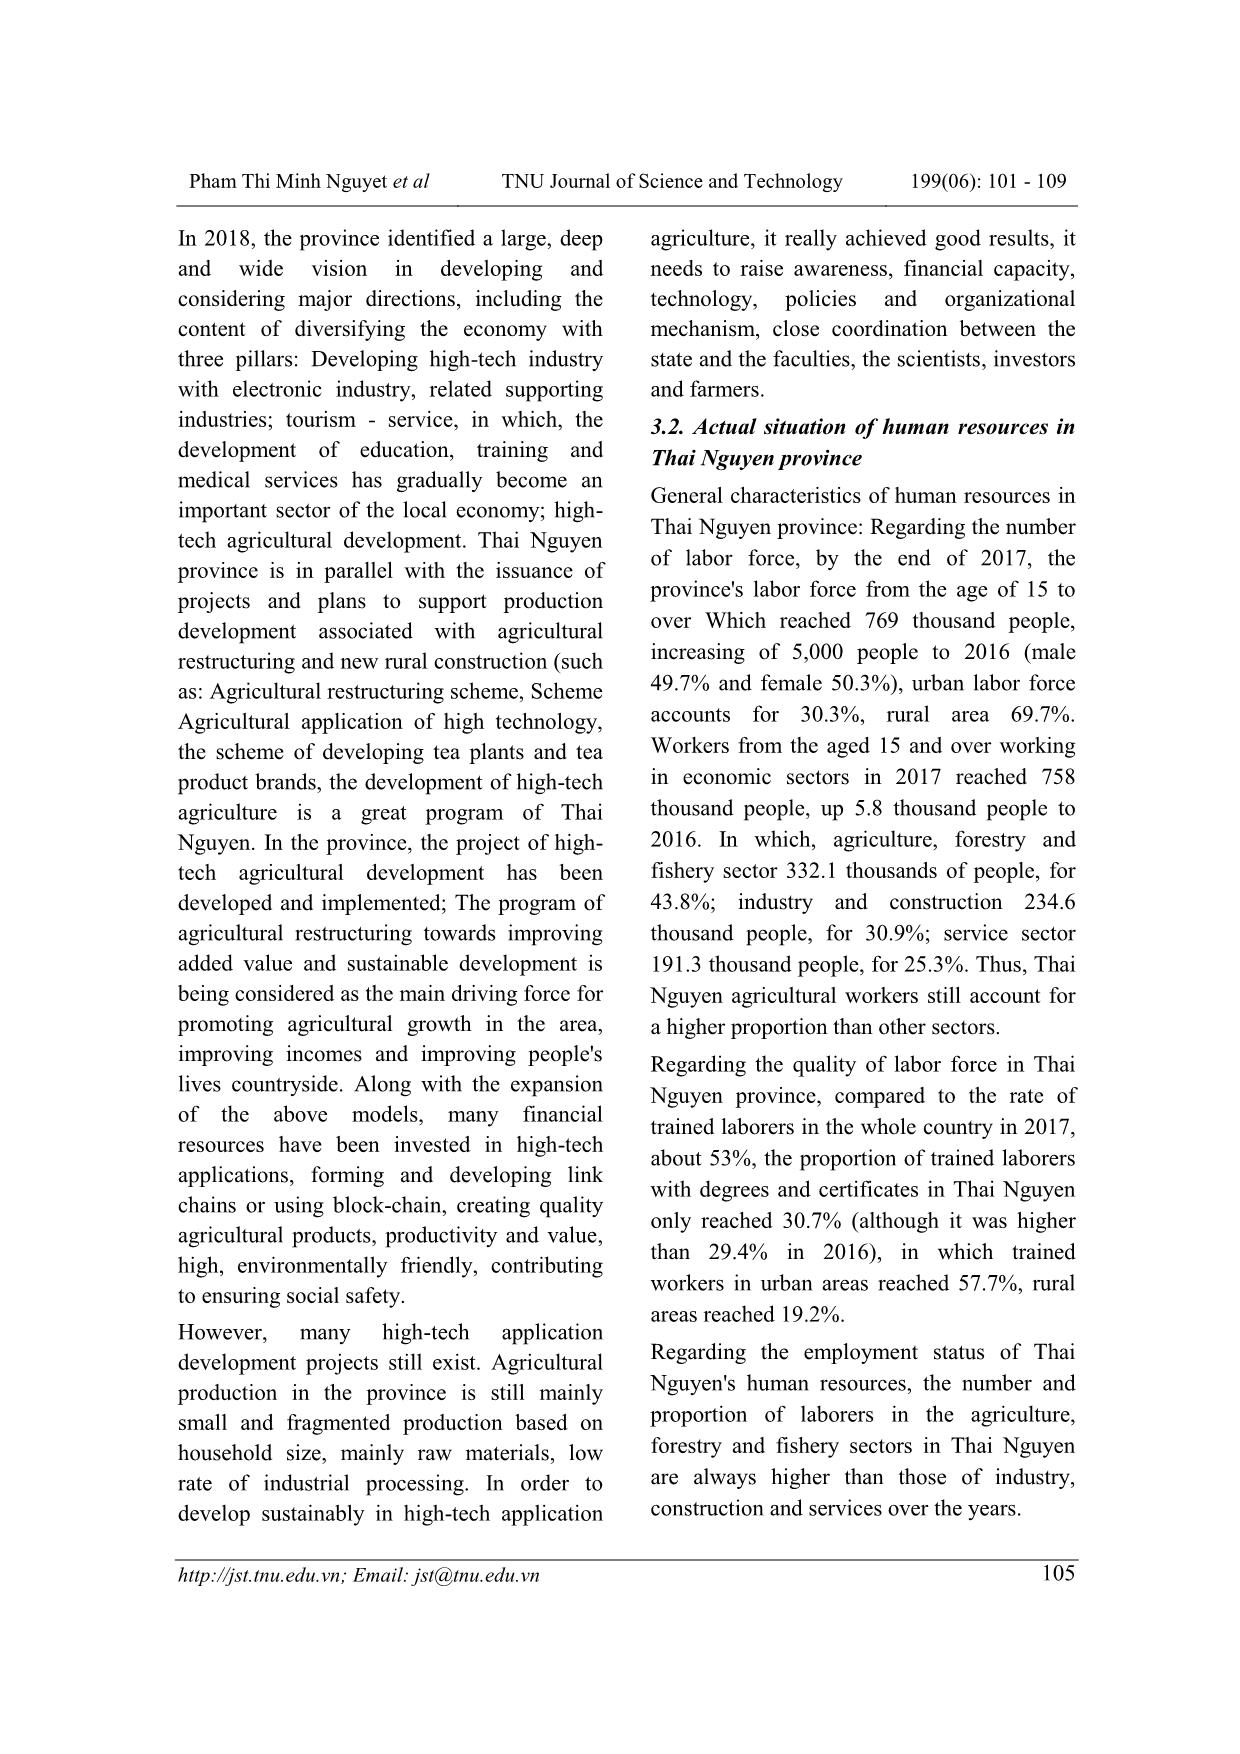 Cuộc cách mạng công nghiệp 4.0 với phát triển nhân lực nông nghiệp công nghệ cao tỉnh Thái Nguyên trang 5